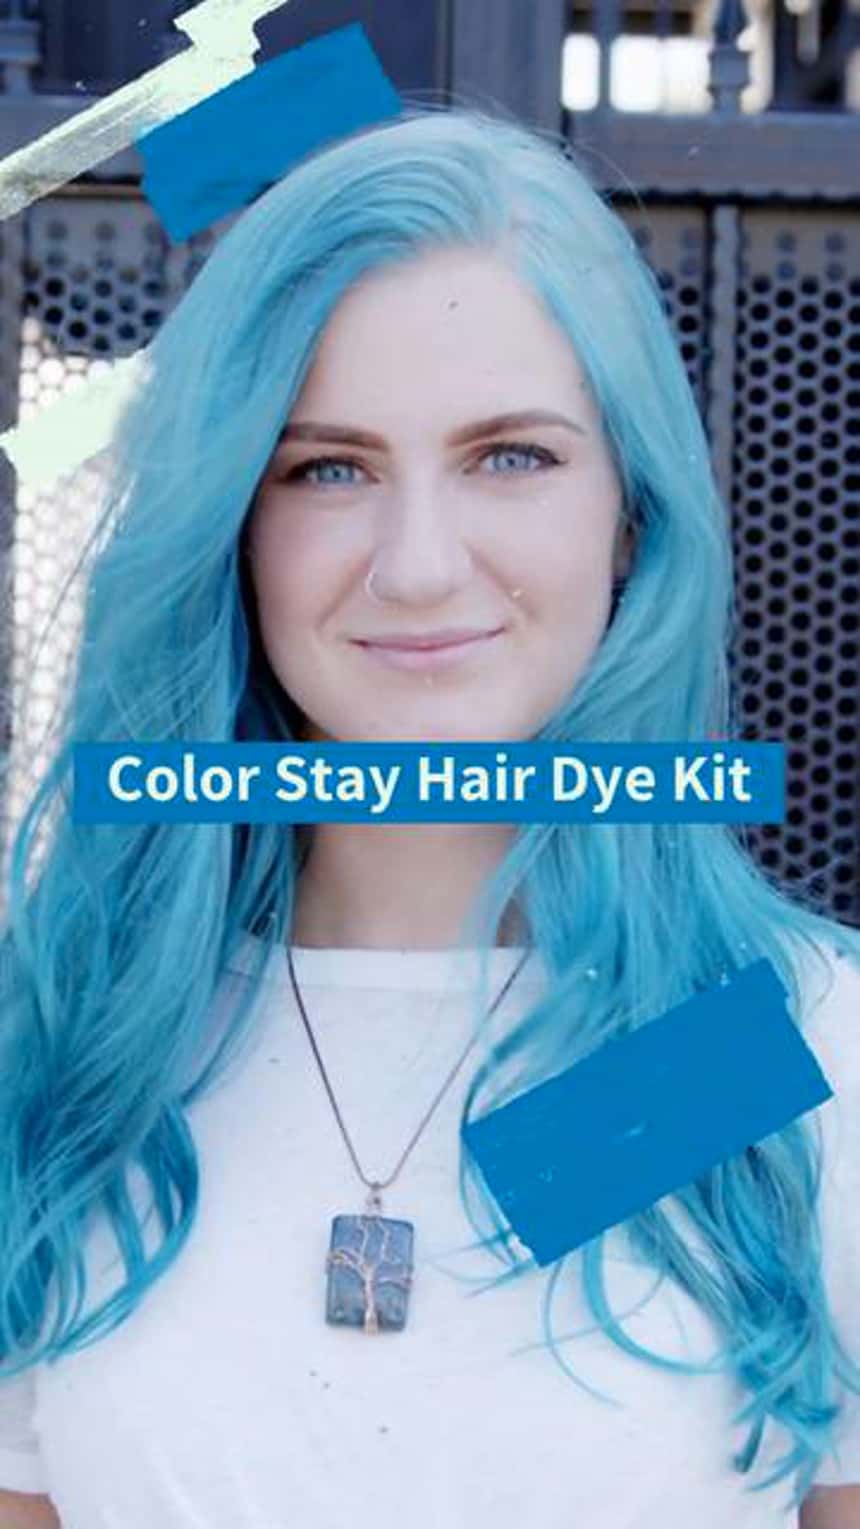 青い髪の人のTikTok製品デモ。画像のテキストは「ヘアカラーキット」と書かれています